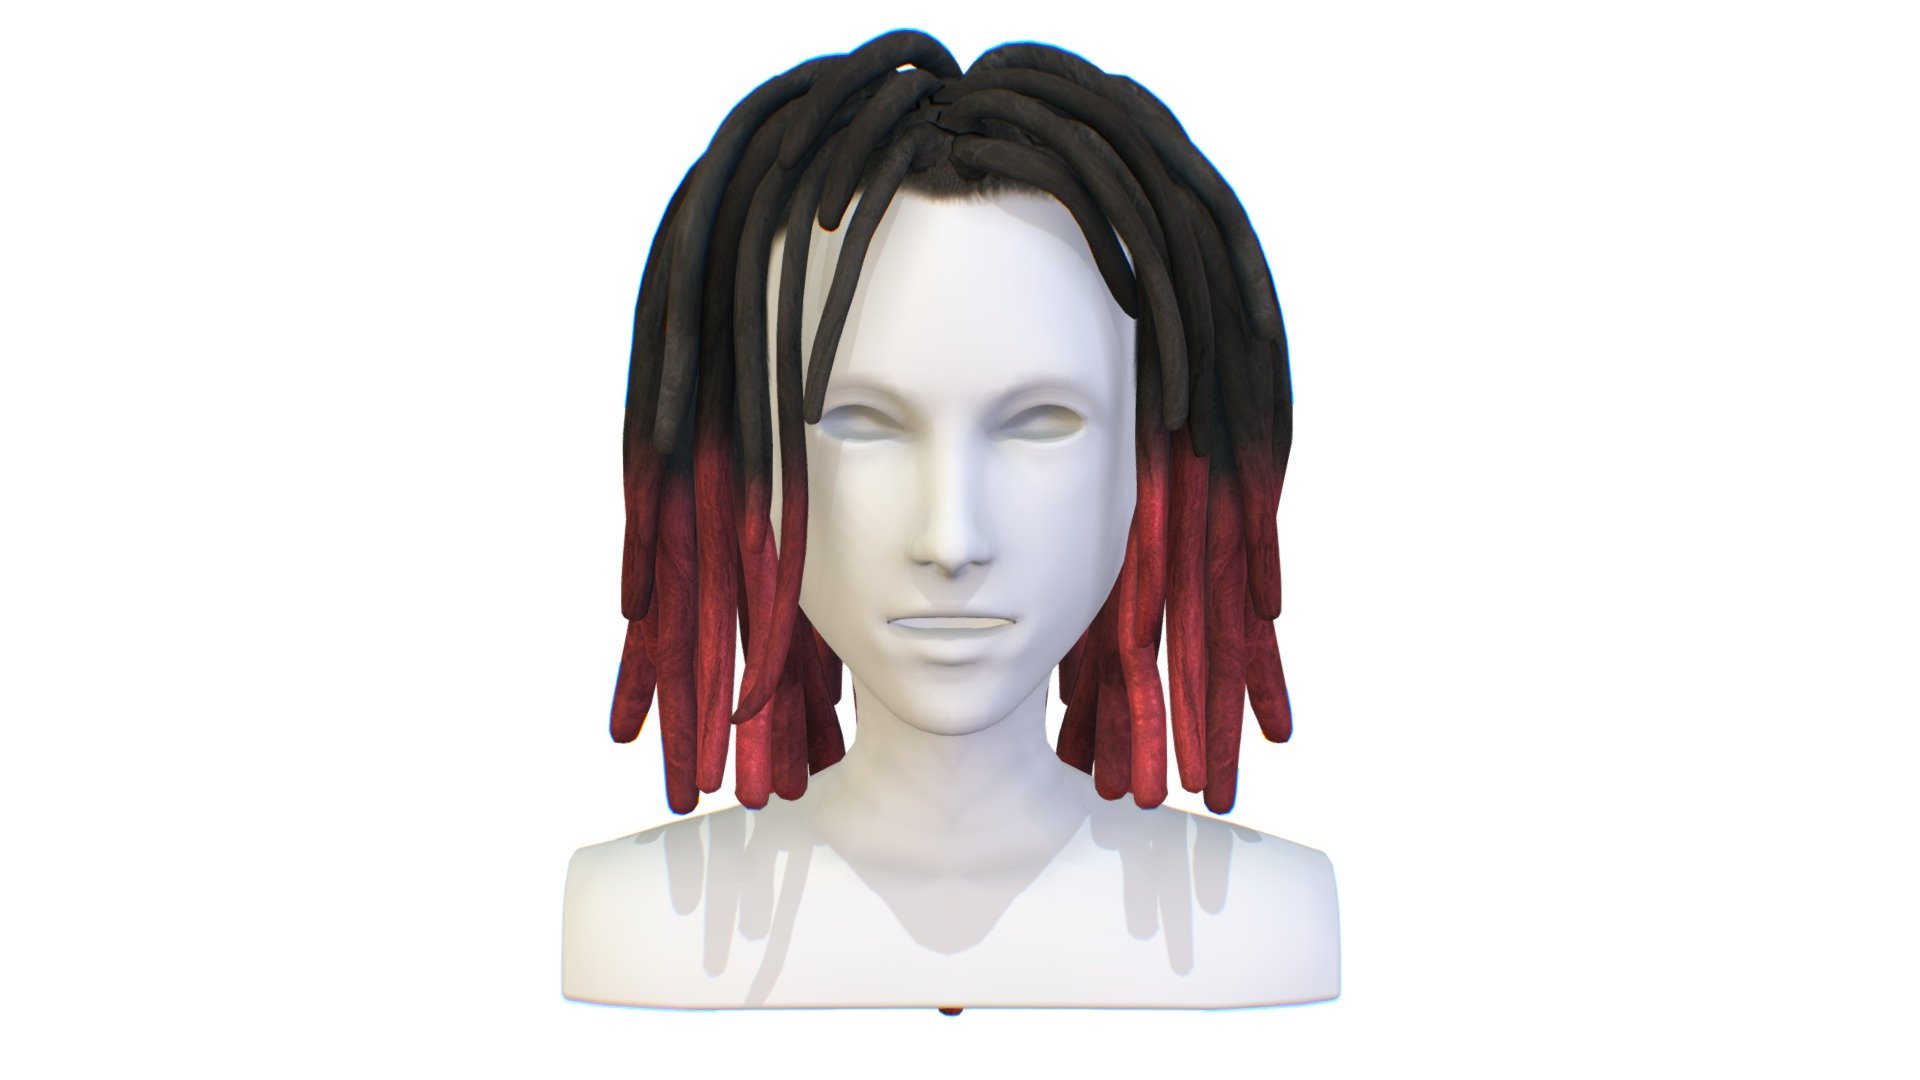 Hairstyle Dreadlocks Black Red - Hairstyle Dreadlocks Black Red - Buy Royalty Free 3D model by Oleg Shuldiakov (@olegshuldiakov) 3d model